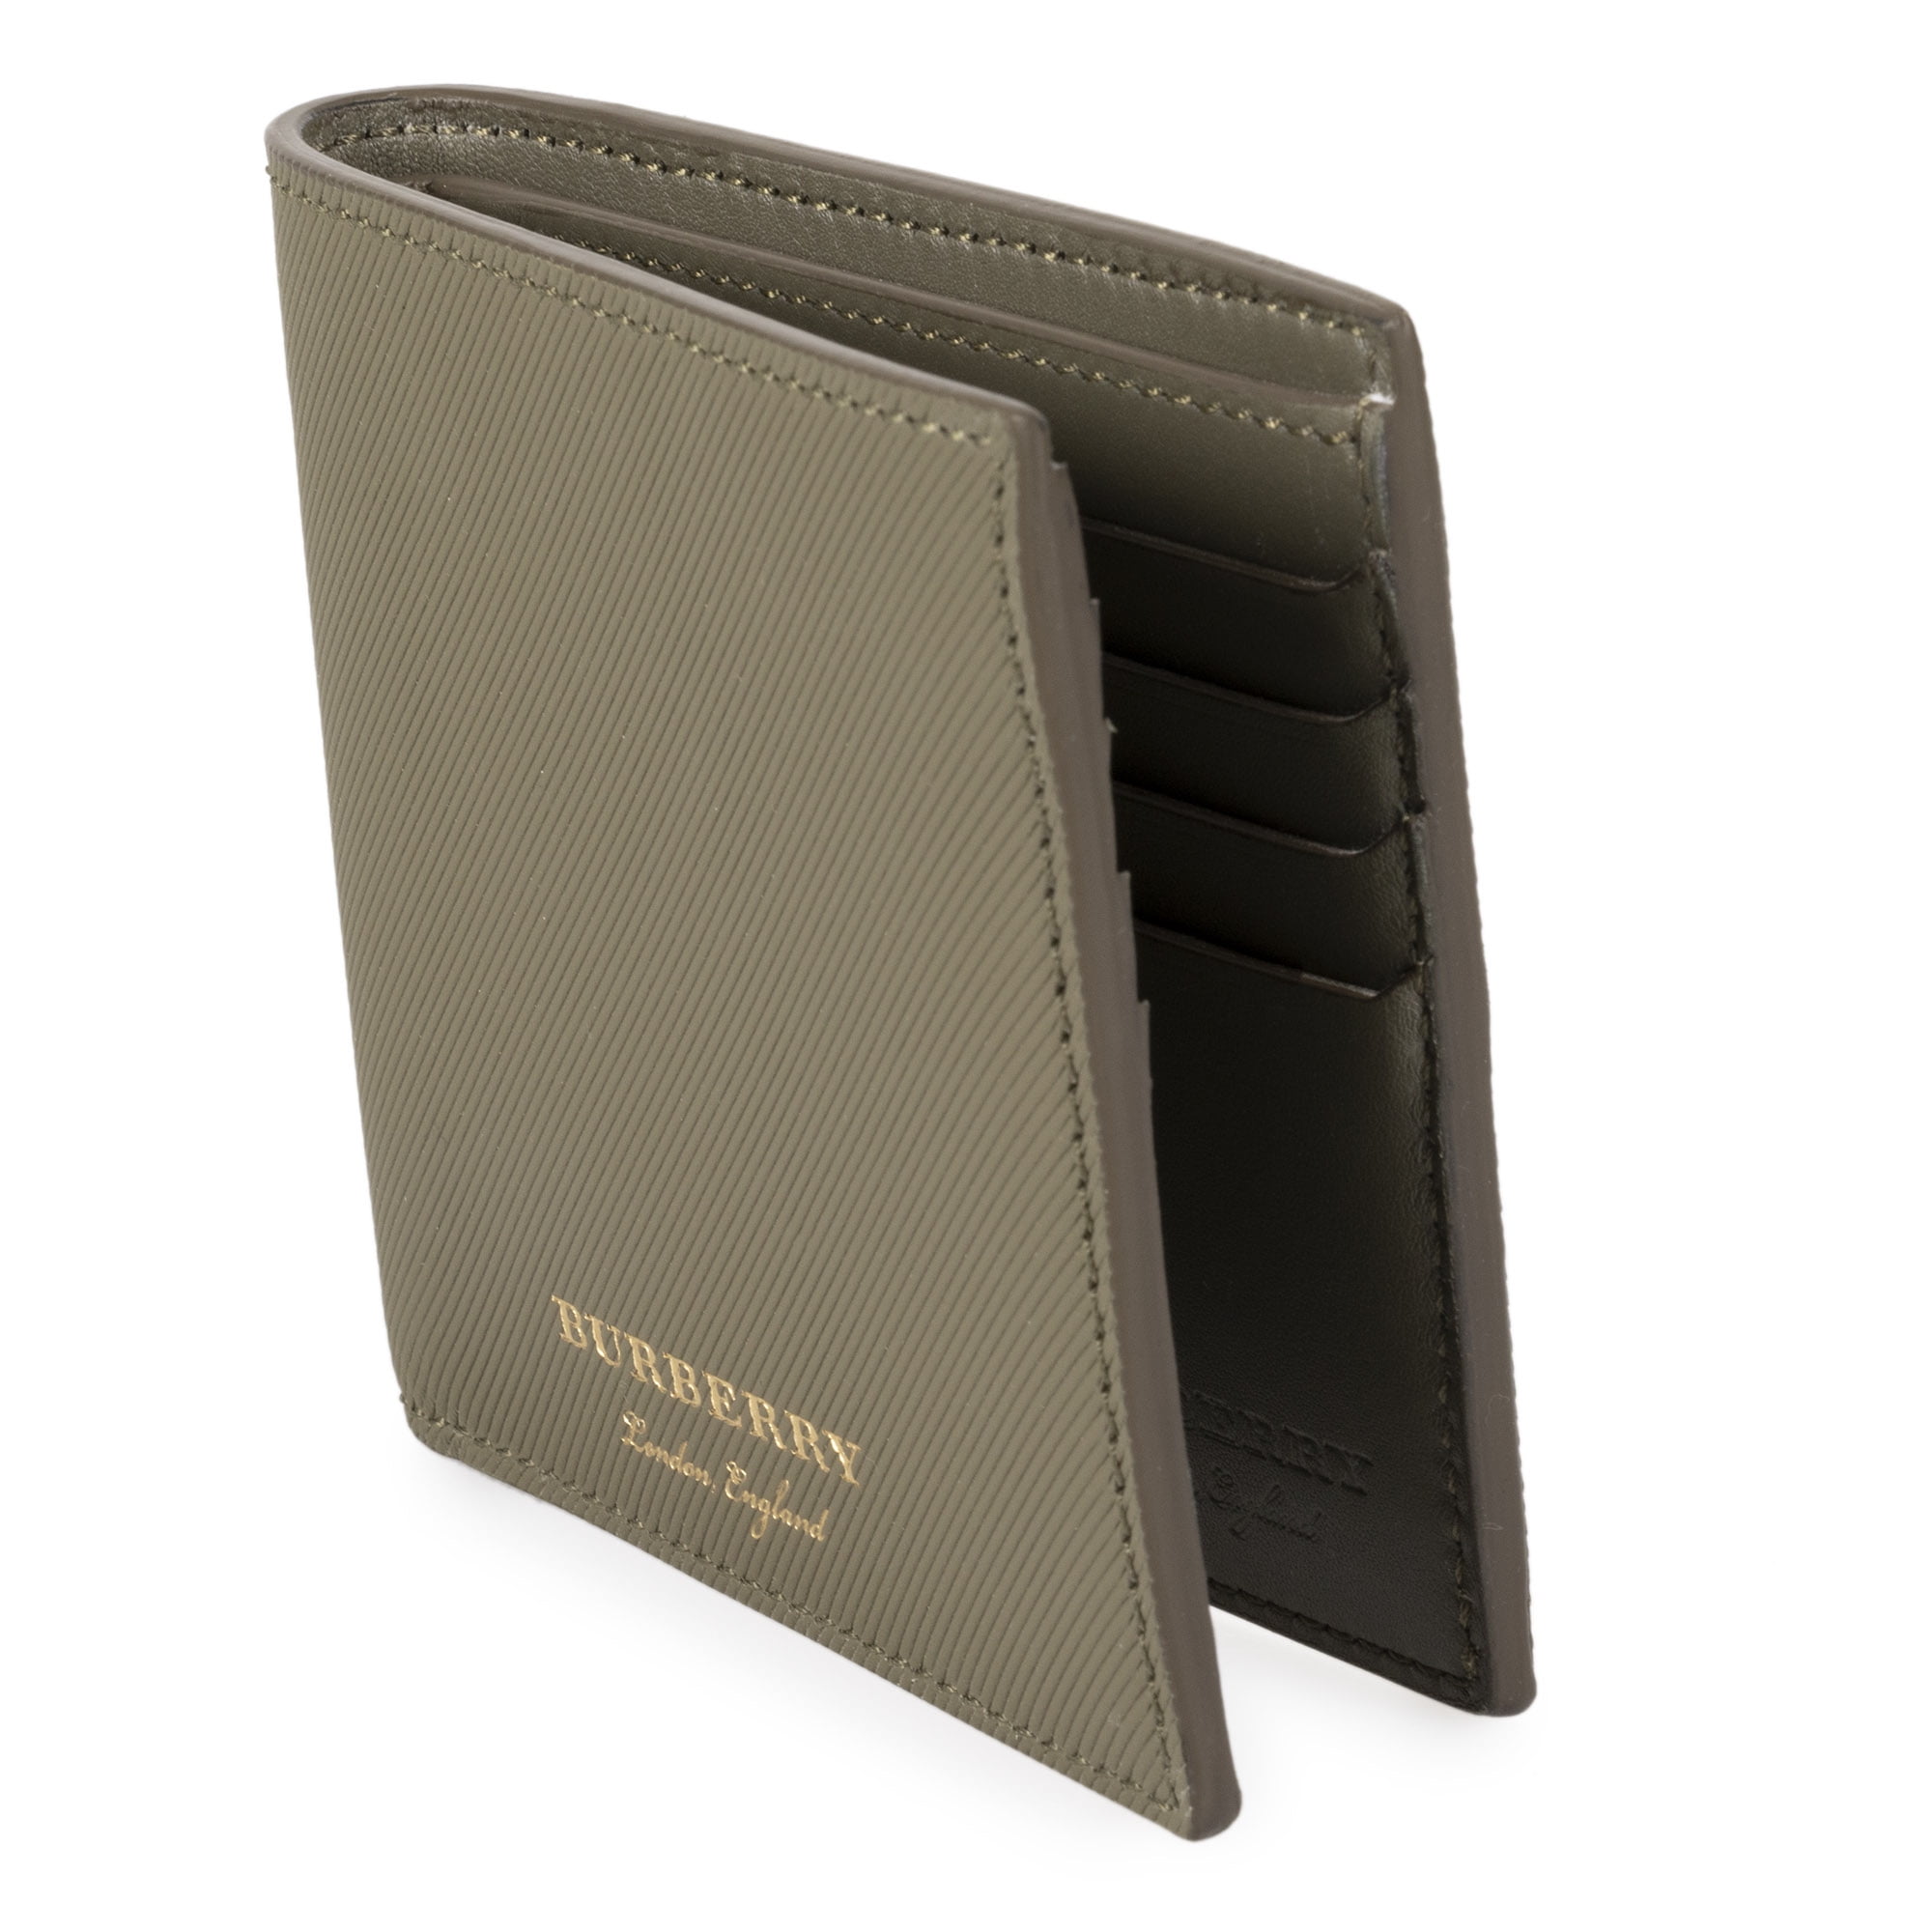 burberry hipfold wallet